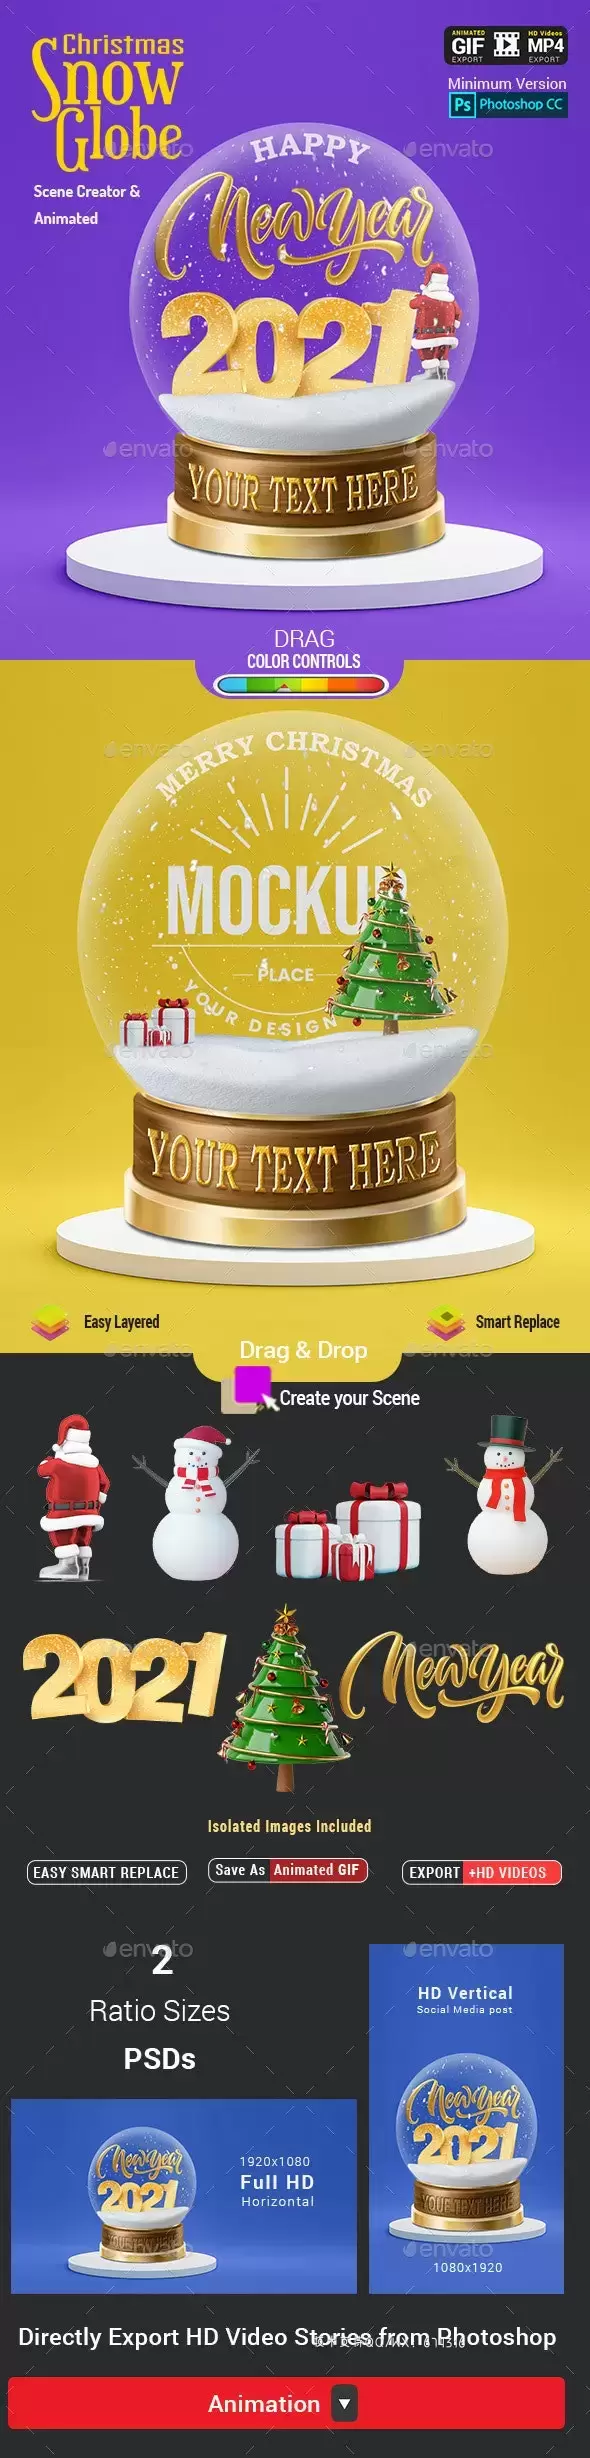 圣诞雪景球-动画场景生成器样机模板 (PSD)免费下载插图